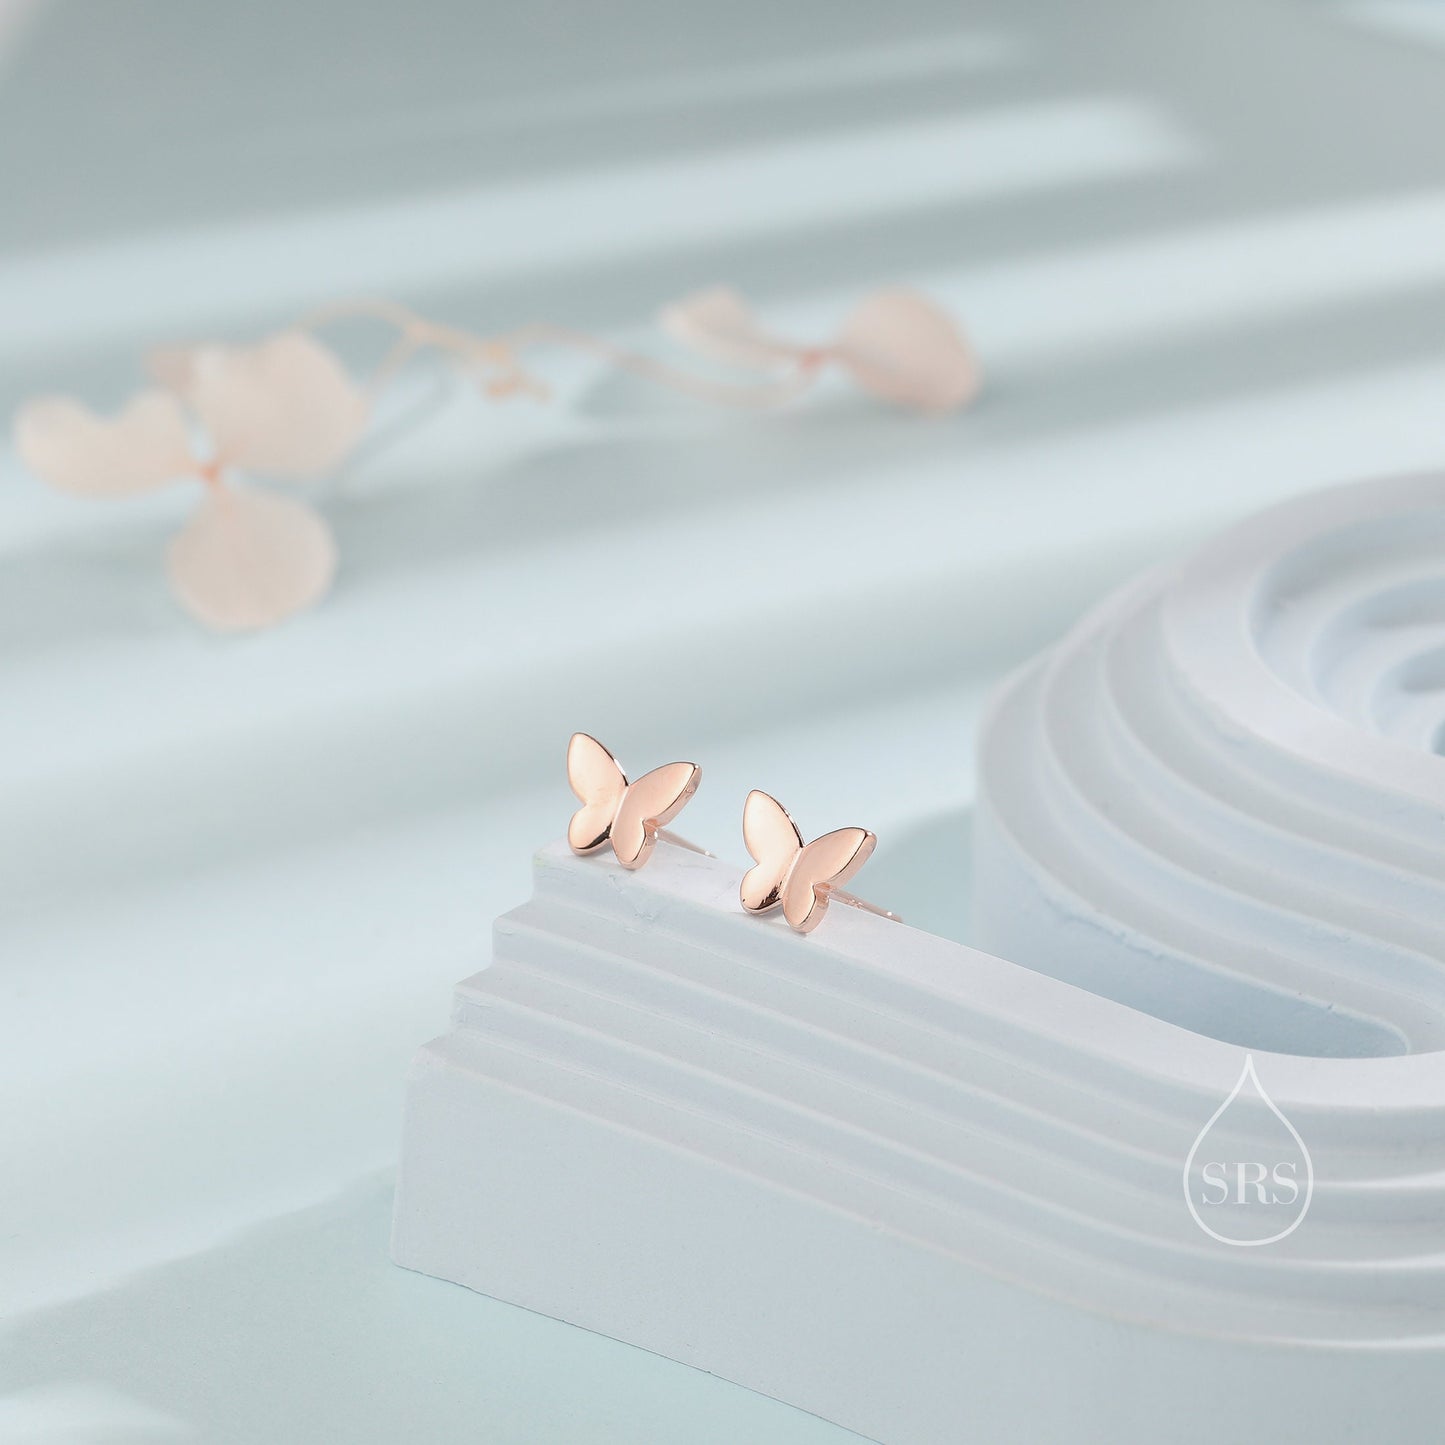 Small Butterfly Stud Earrings in Sterling Silver, Silver, Gold or Rose Gold, Butterfly Earrings, Animal Earrings, Small Butterfly Earrings